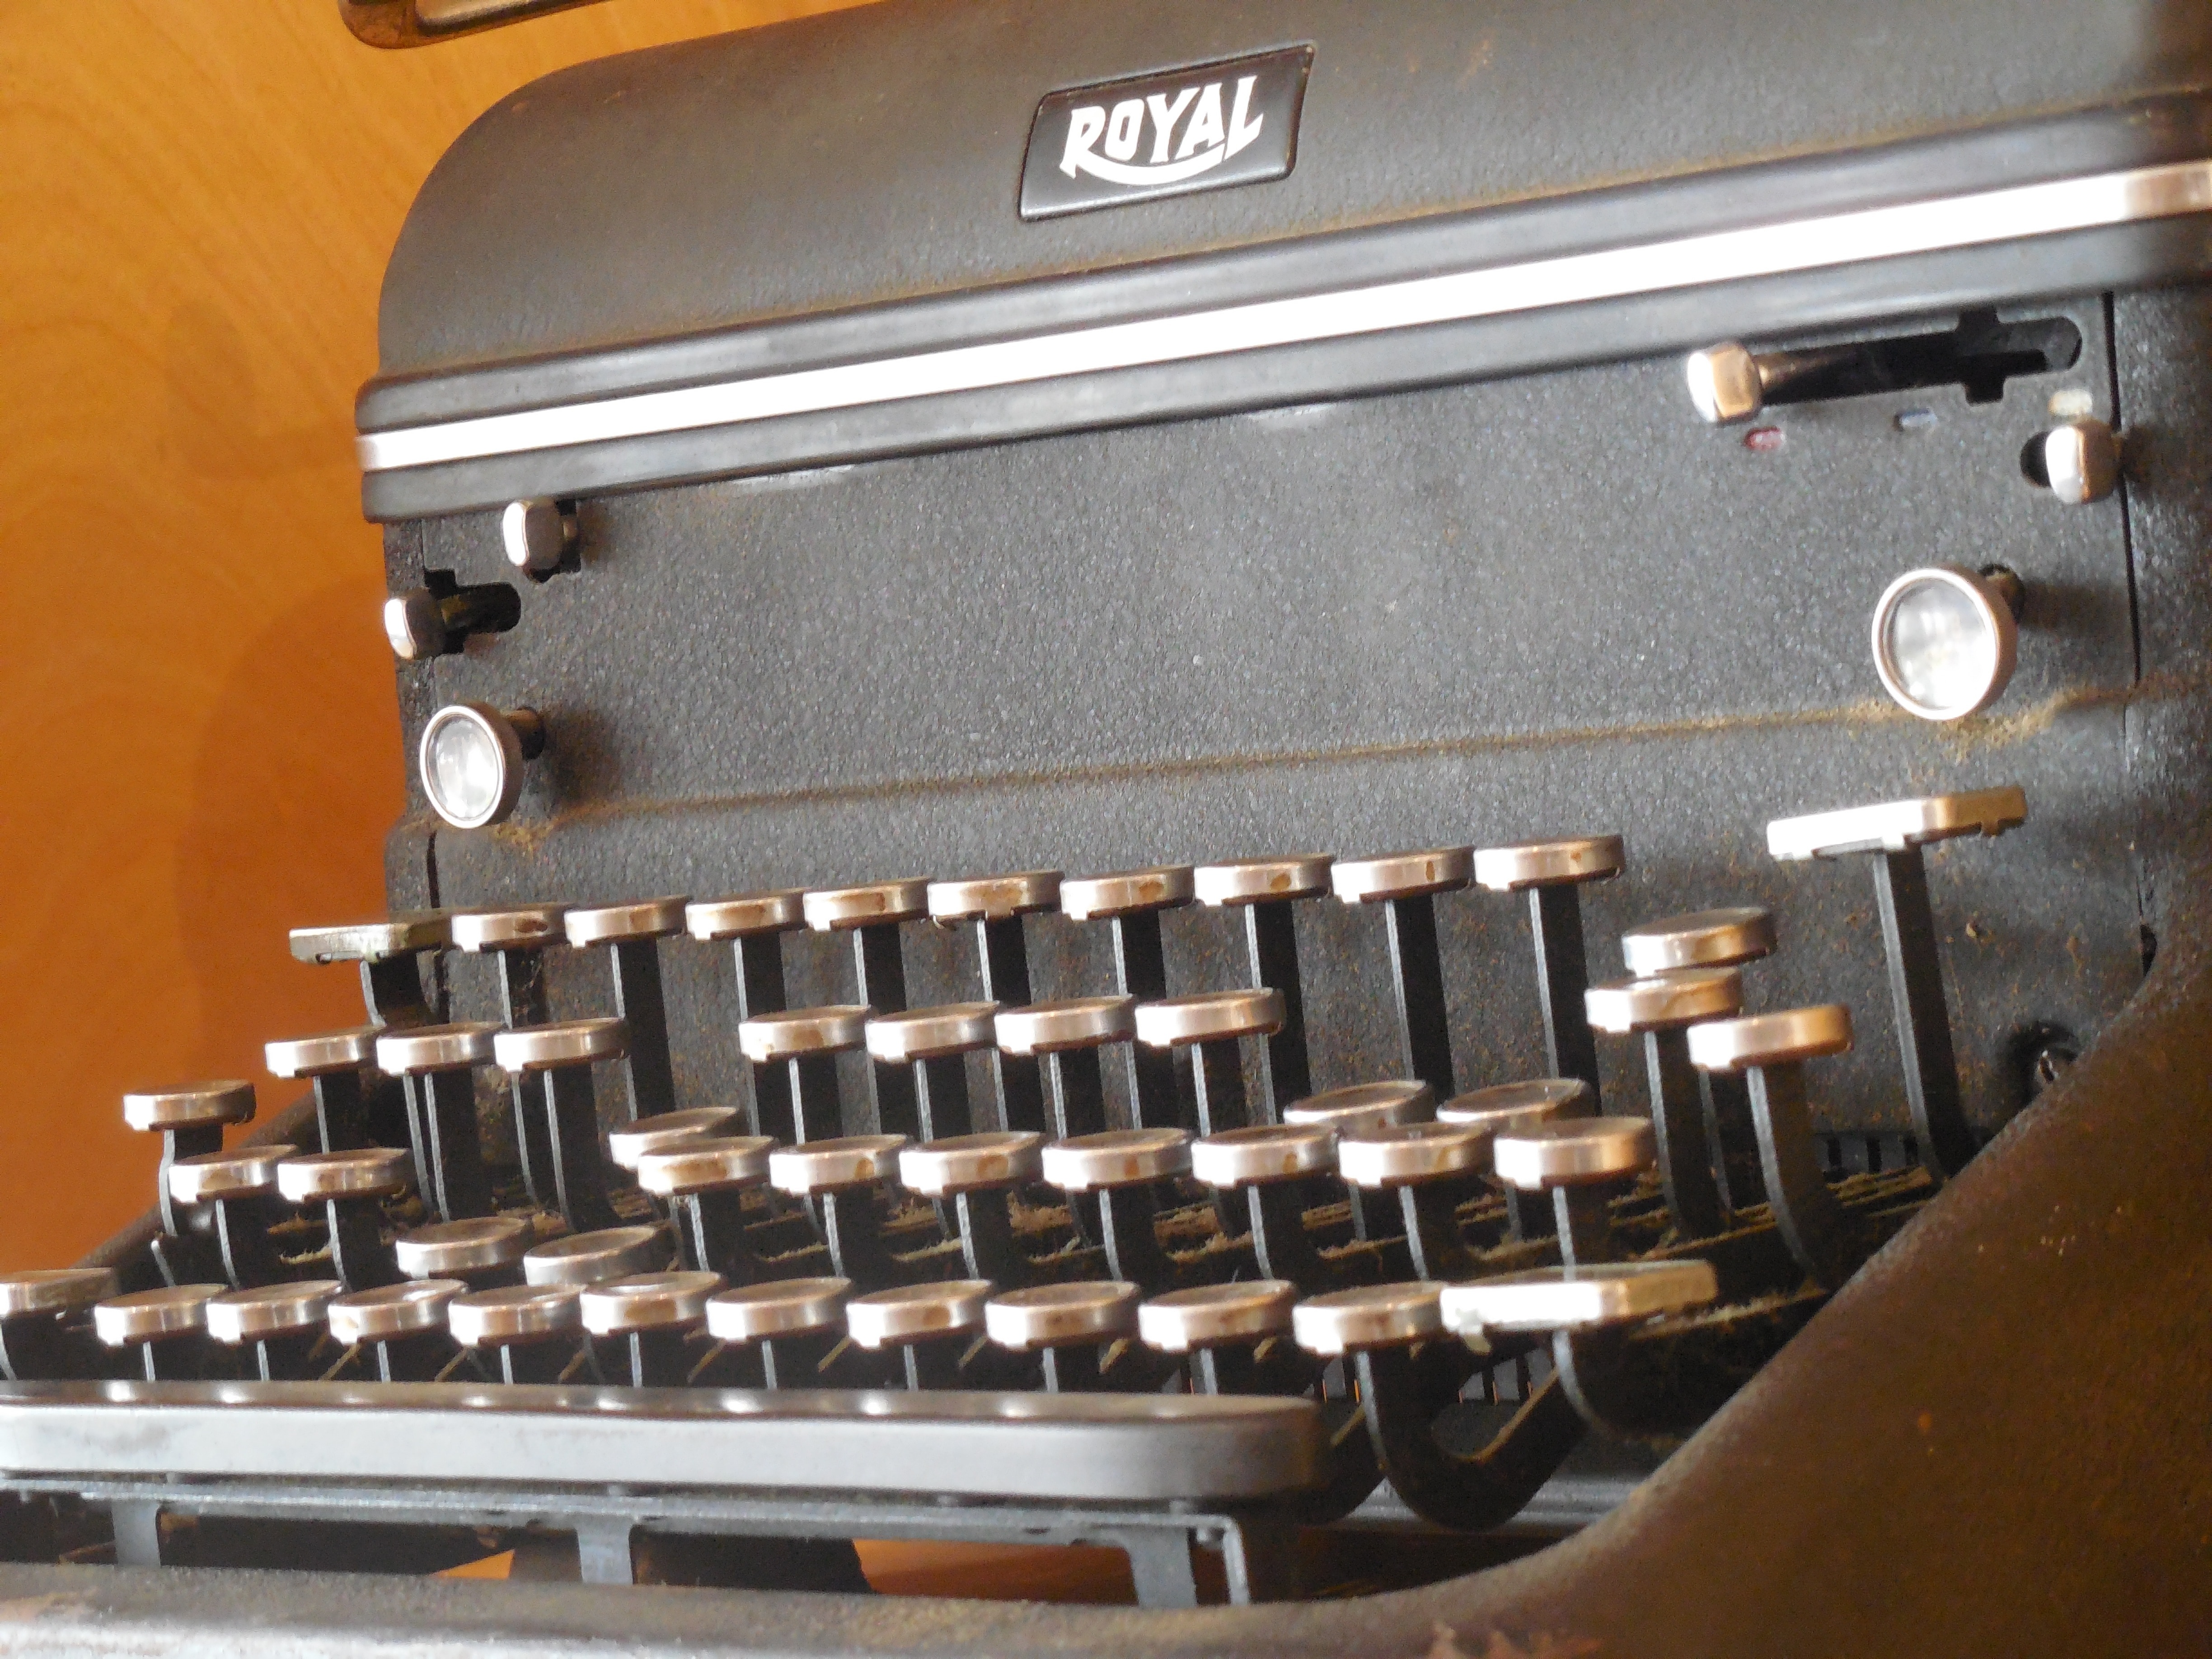 Vintage, Typewriter, Vintage Typewriter, old-fashioned, typewriter